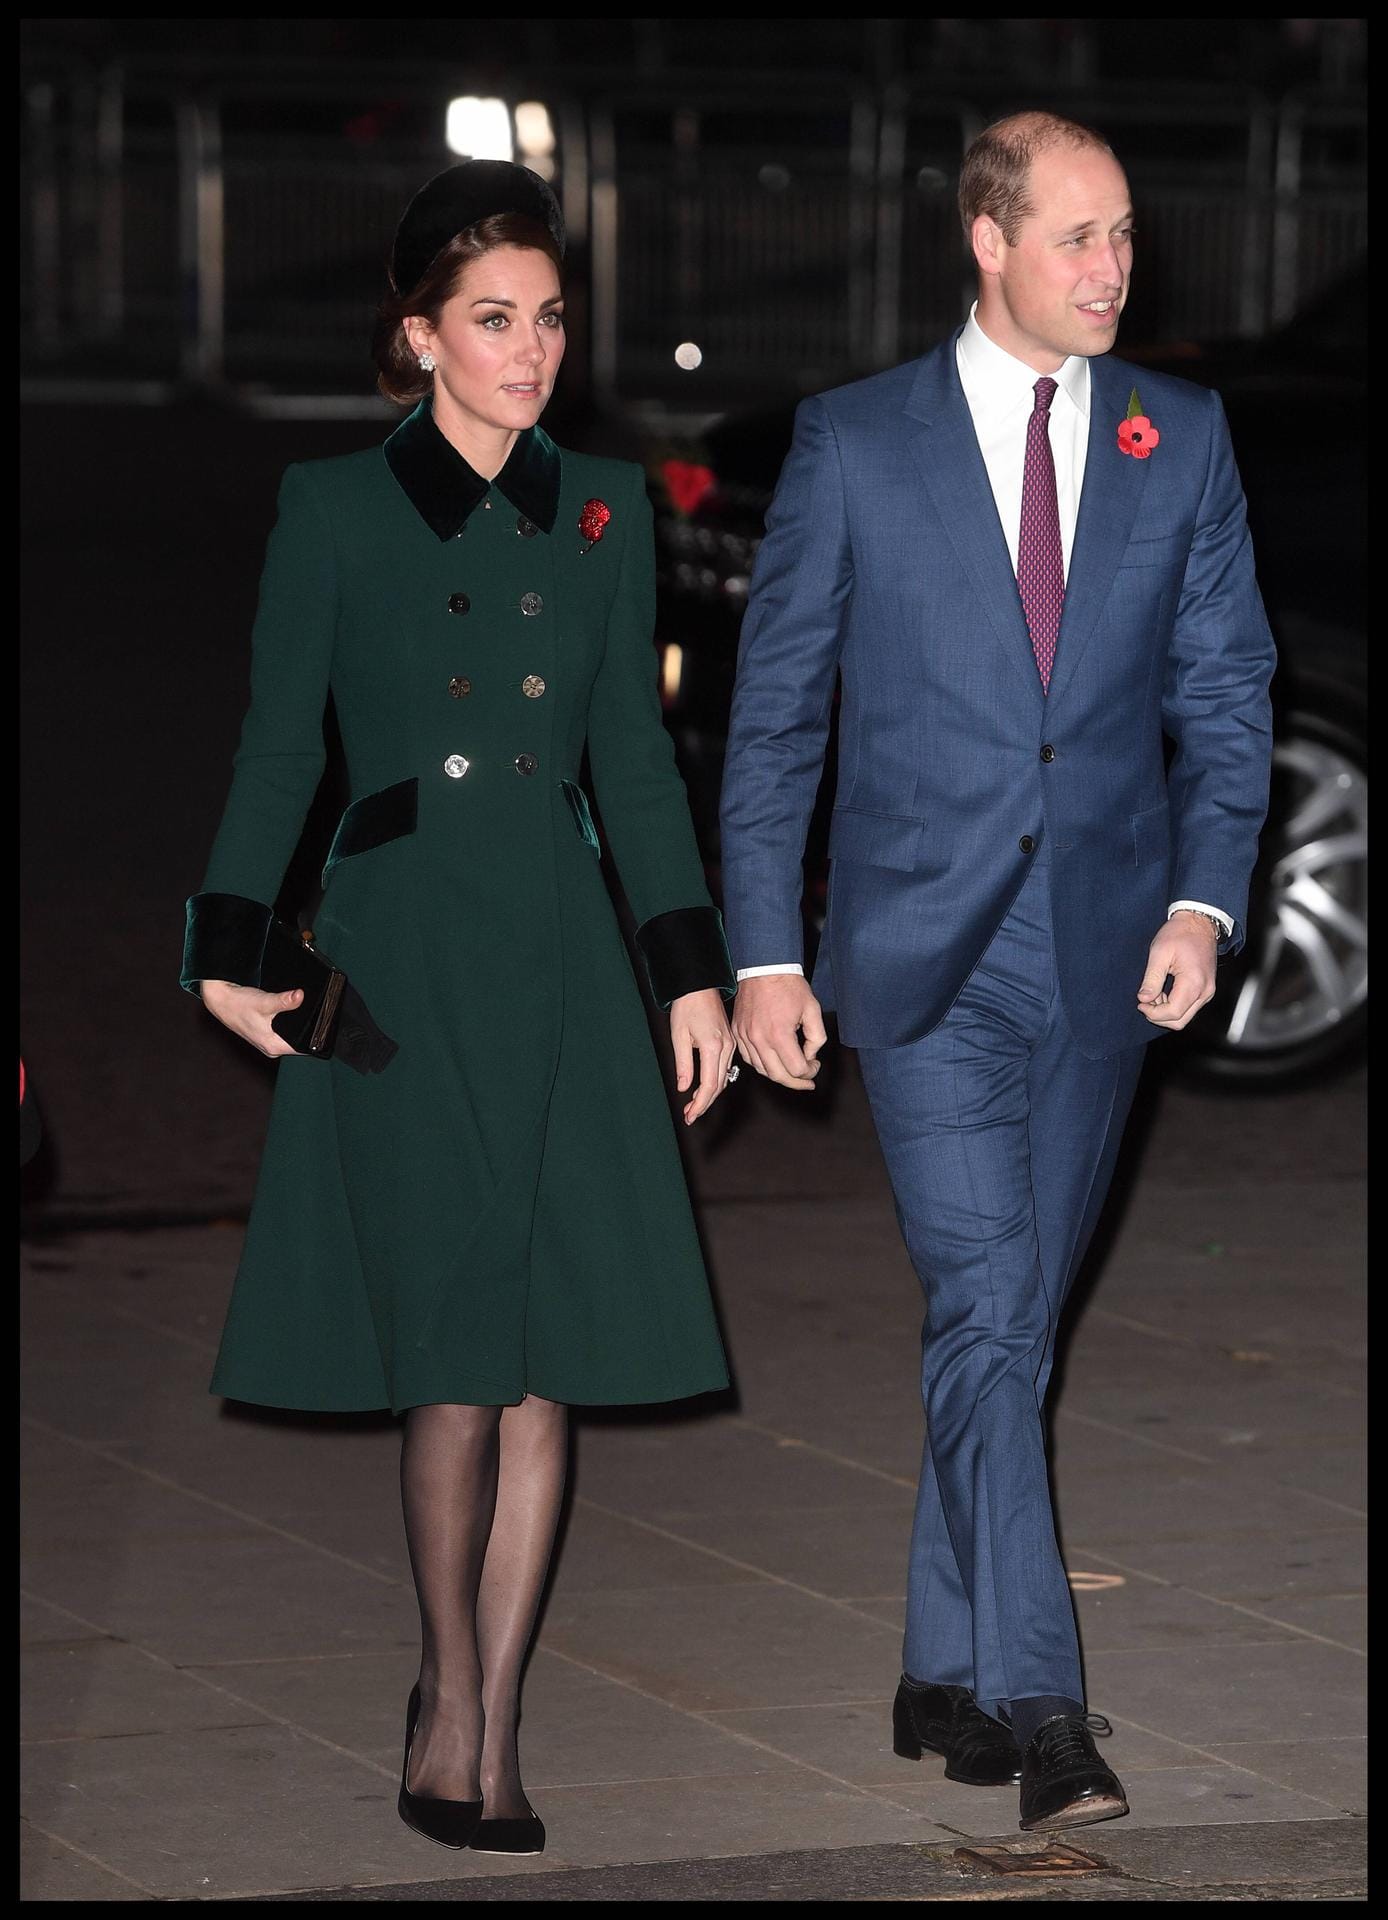 Outfit-Recycling: Herzogin Kate trägt einen altbekannten Mantel, Prinz William – mal wieder – einen blauen Anzug.